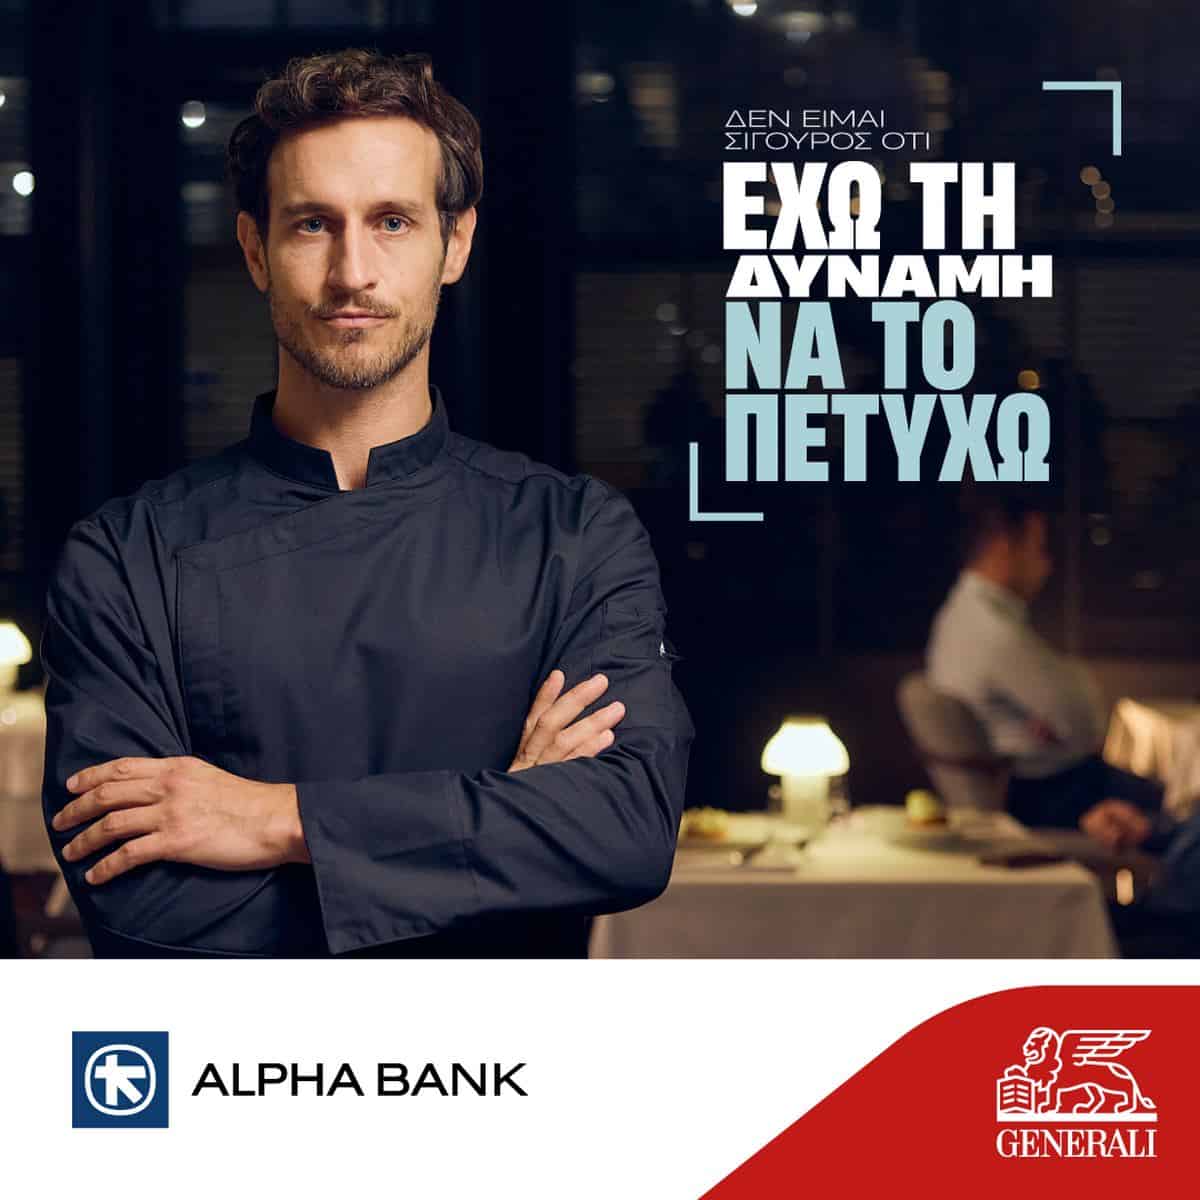 Κοινή διαφημιστική καμπάνια Alpha Bank & Generali